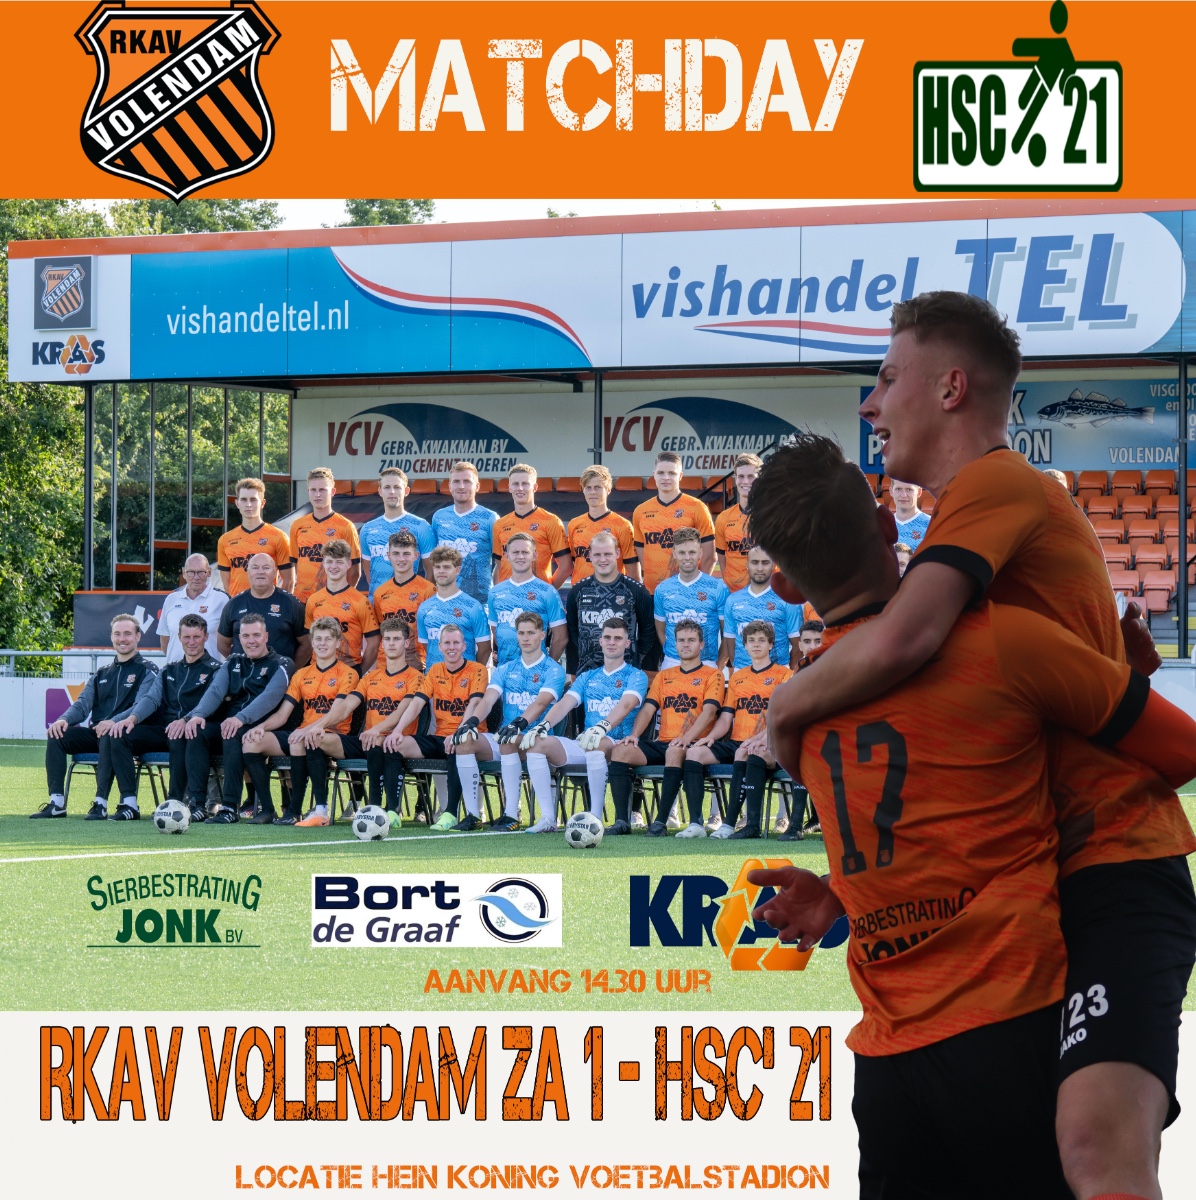 Rkav Volendam - HSC'21